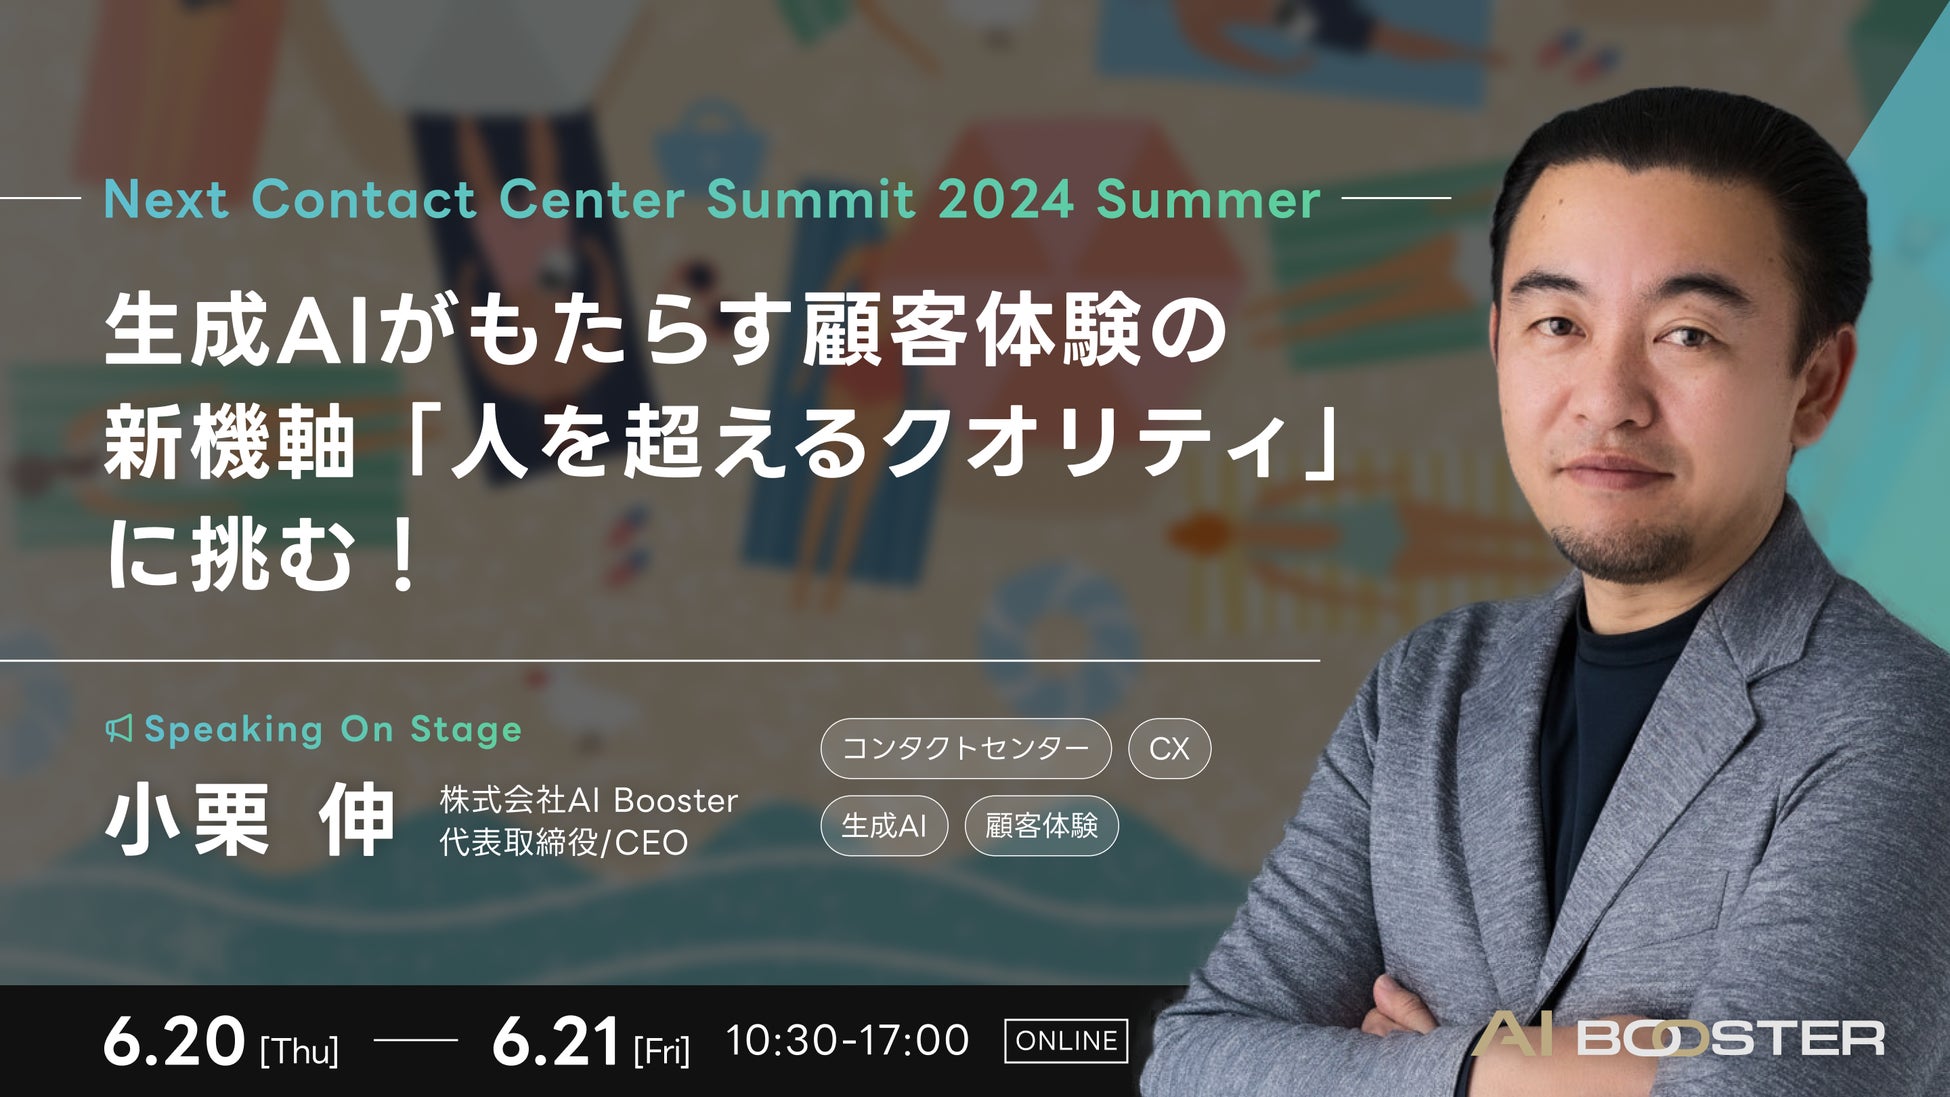 AI Booster CEO 小栗伸、「ネクスト・コンタクトセンター・サミット2024夏」オープニングセッションに登壇